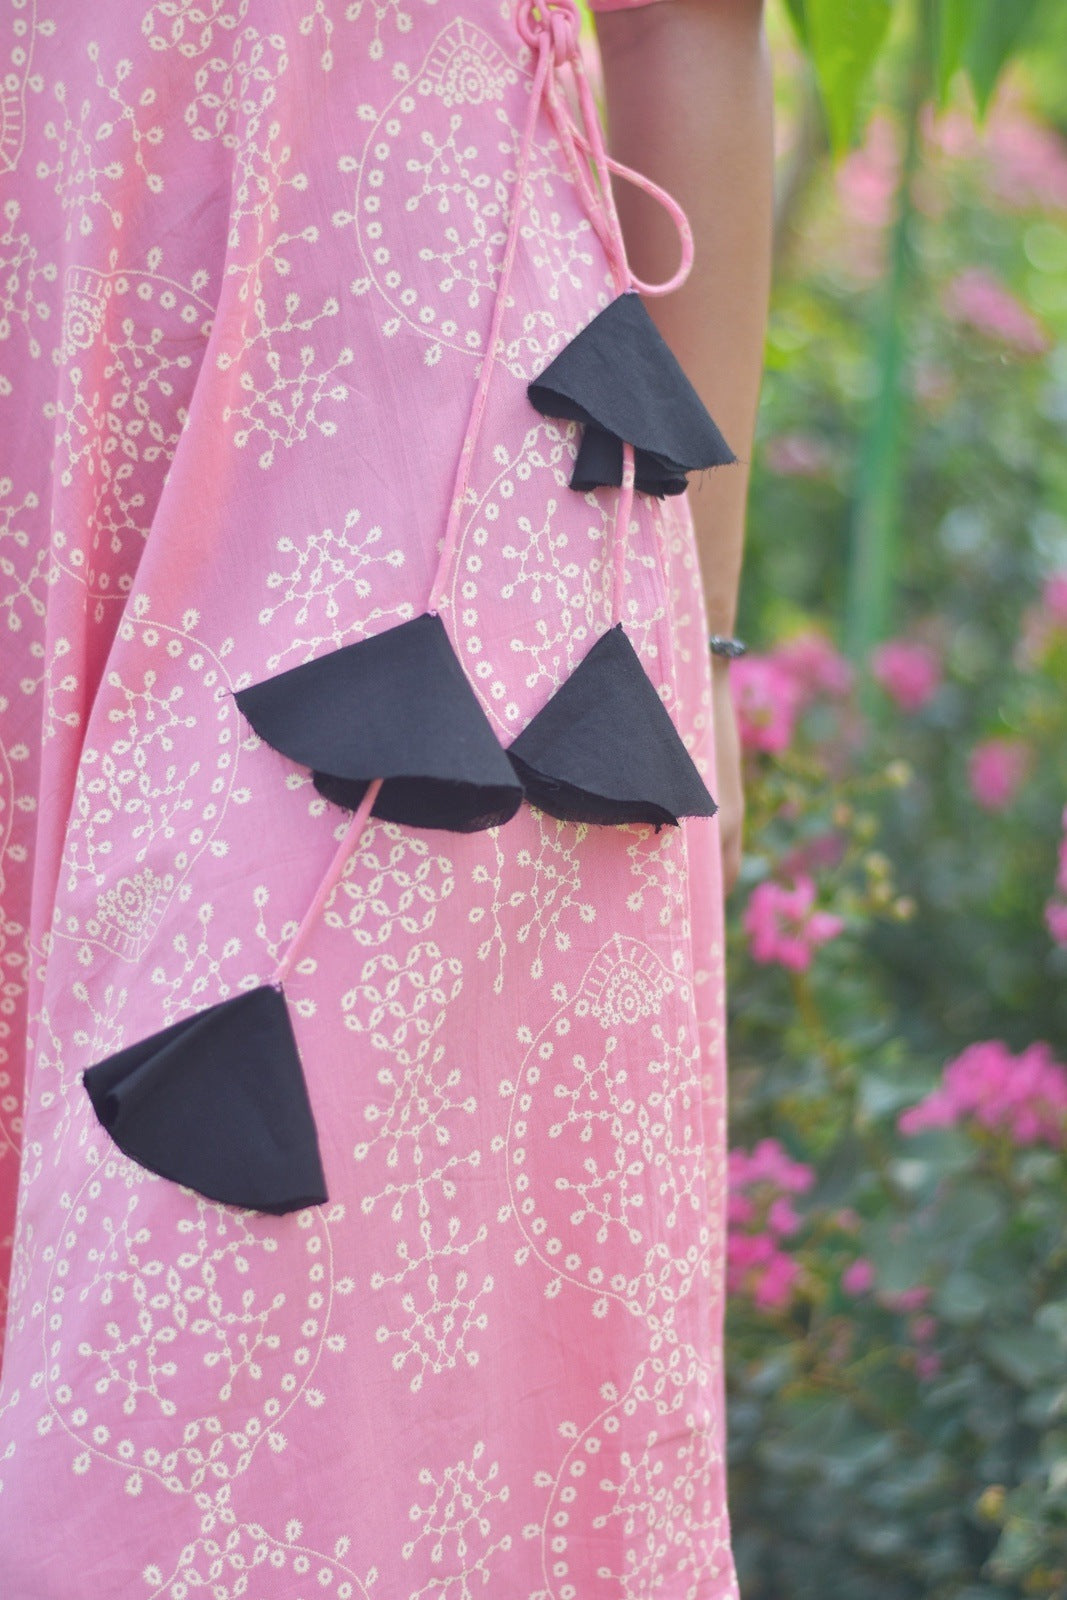 Pink Bhandej Tassel Dress